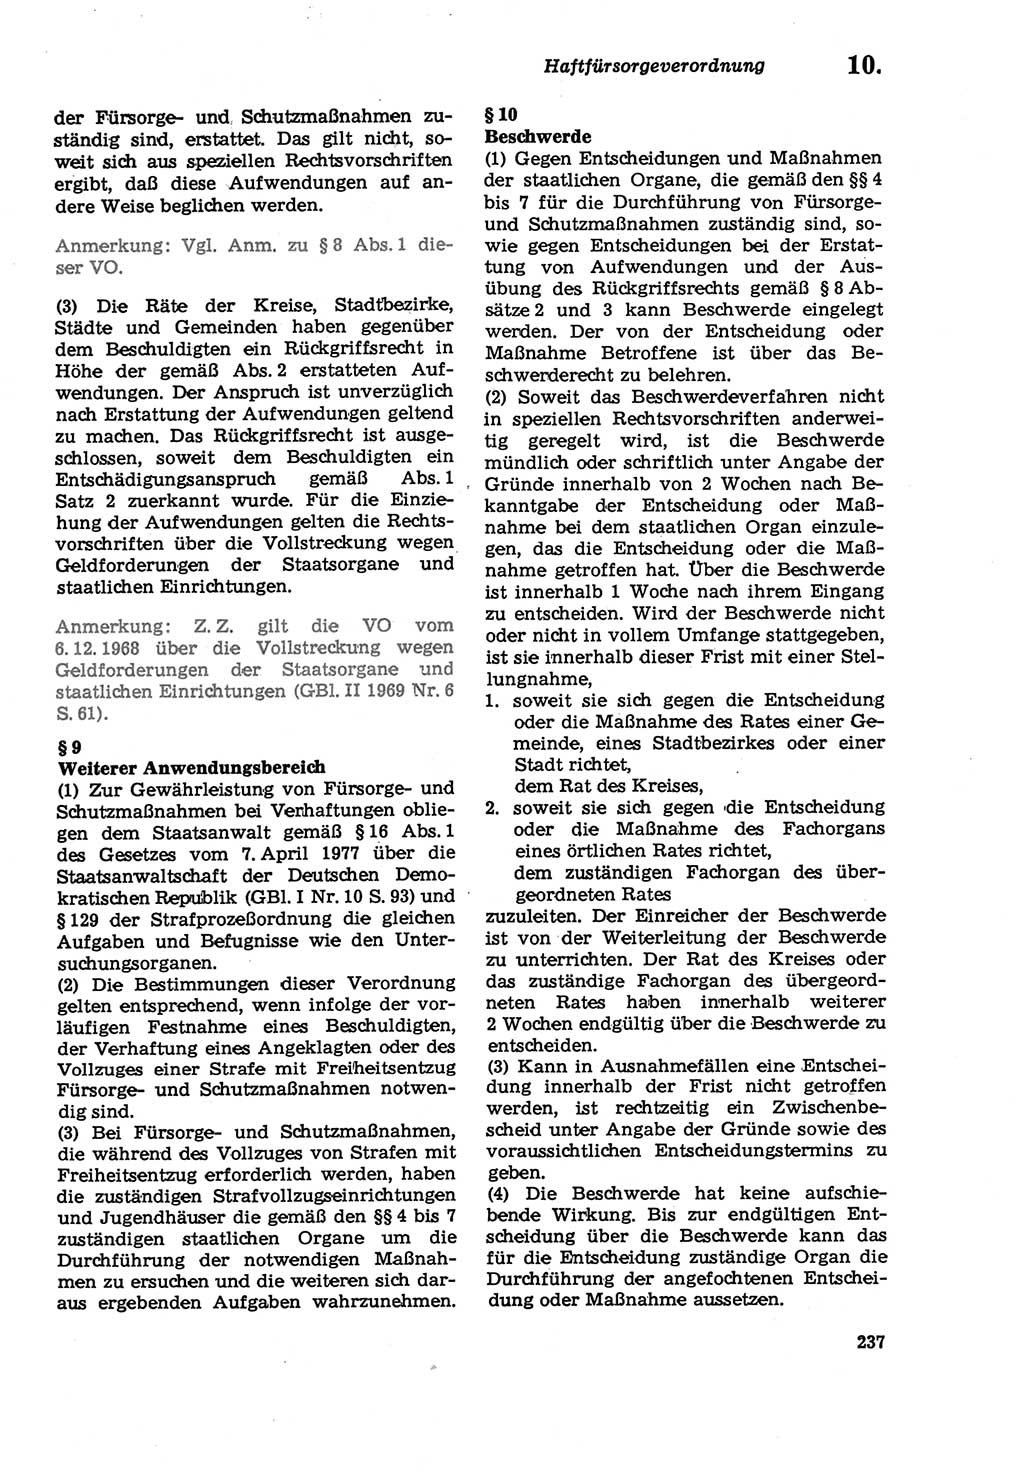 Strafprozeßordnung (StPO) der Deutschen Demokratischen Republik (DDR) sowie angrenzende Gesetze und Bestimmungen 1979, Seite 237 (StPO DDR Ges. Best. 1979, S. 237)